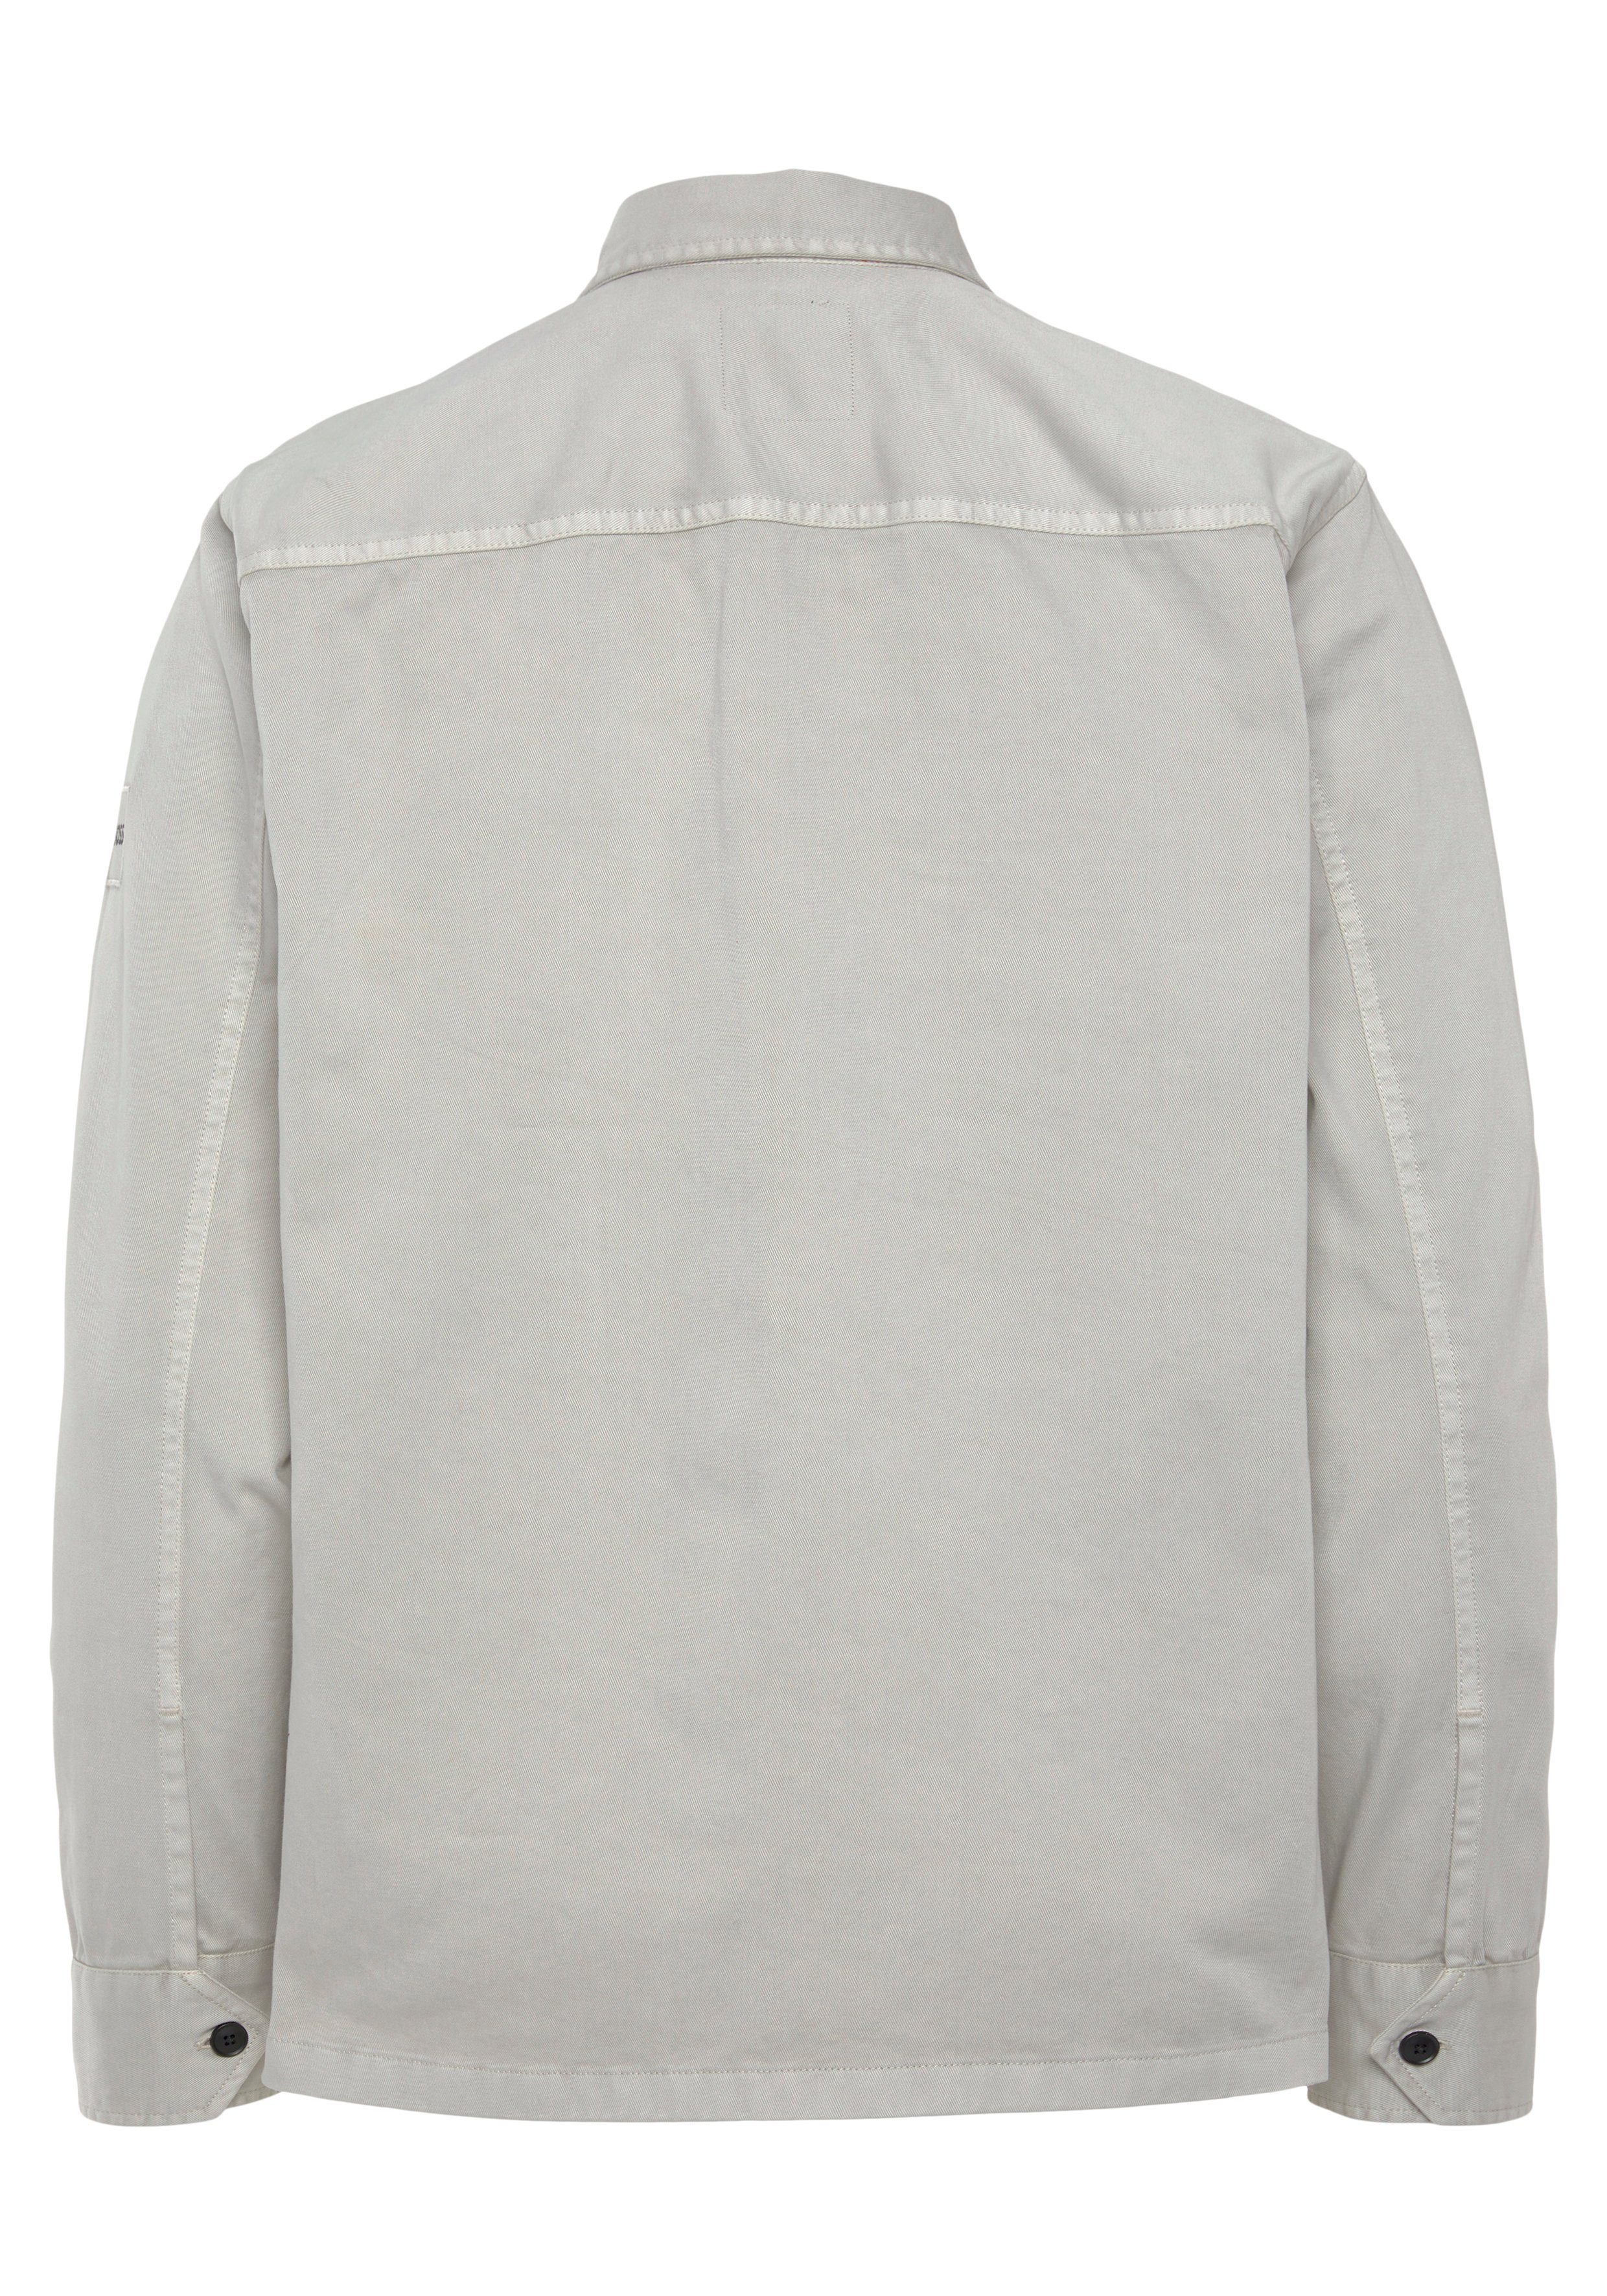 Lovelock ORANGE mit pastellgrau Langarmhemd BOSS Brusttaschen